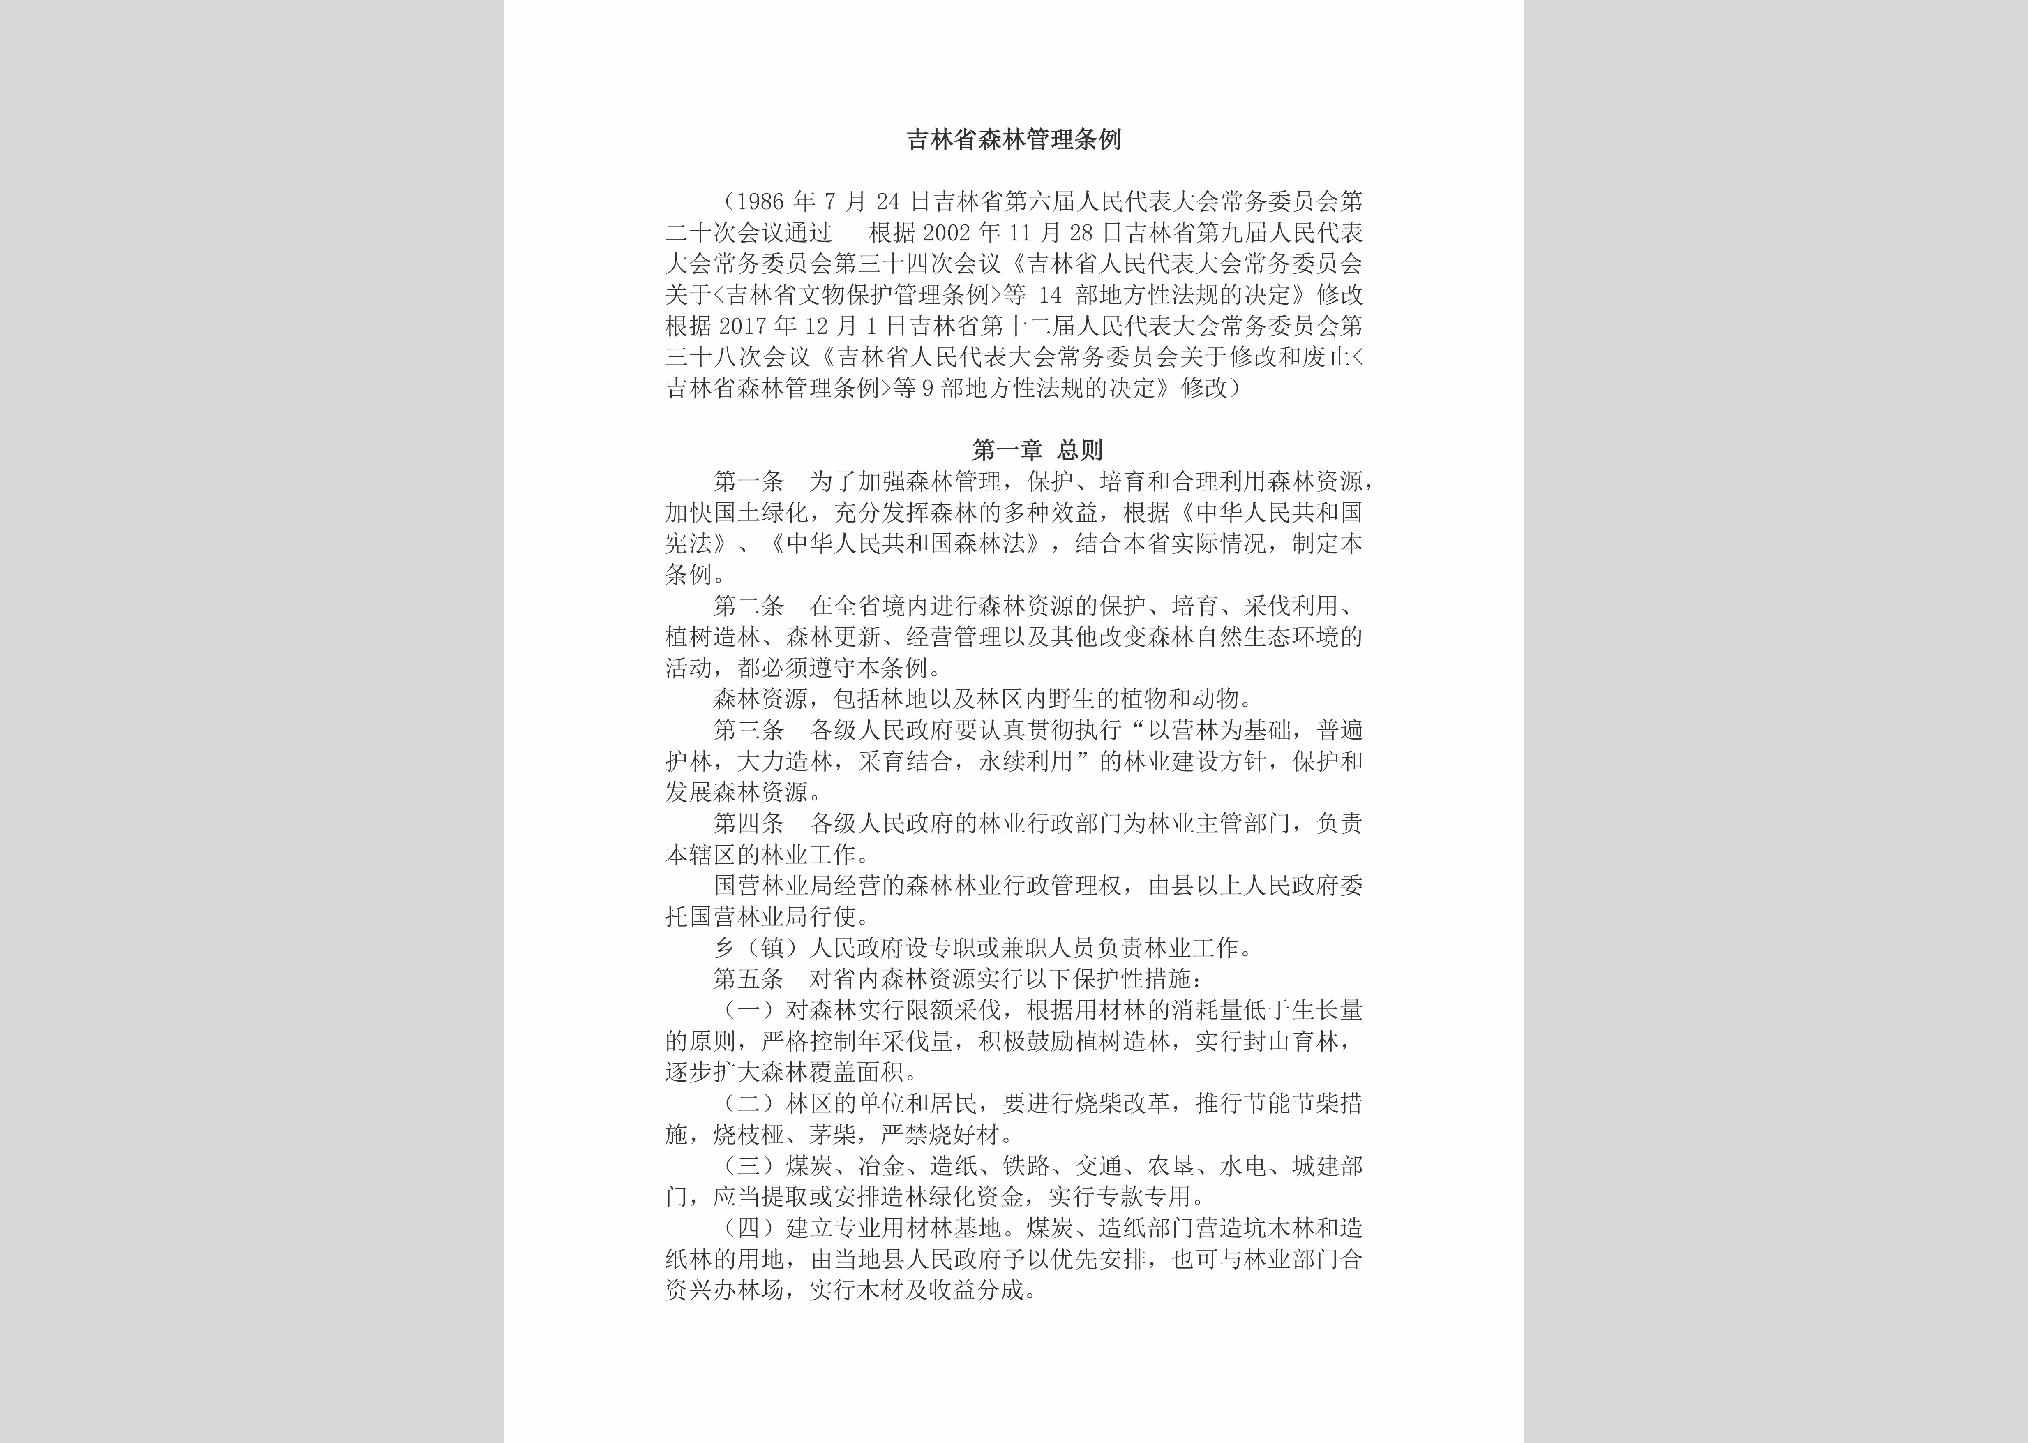 JL-JLSLGLTL-2018：吉林省森林管理条例